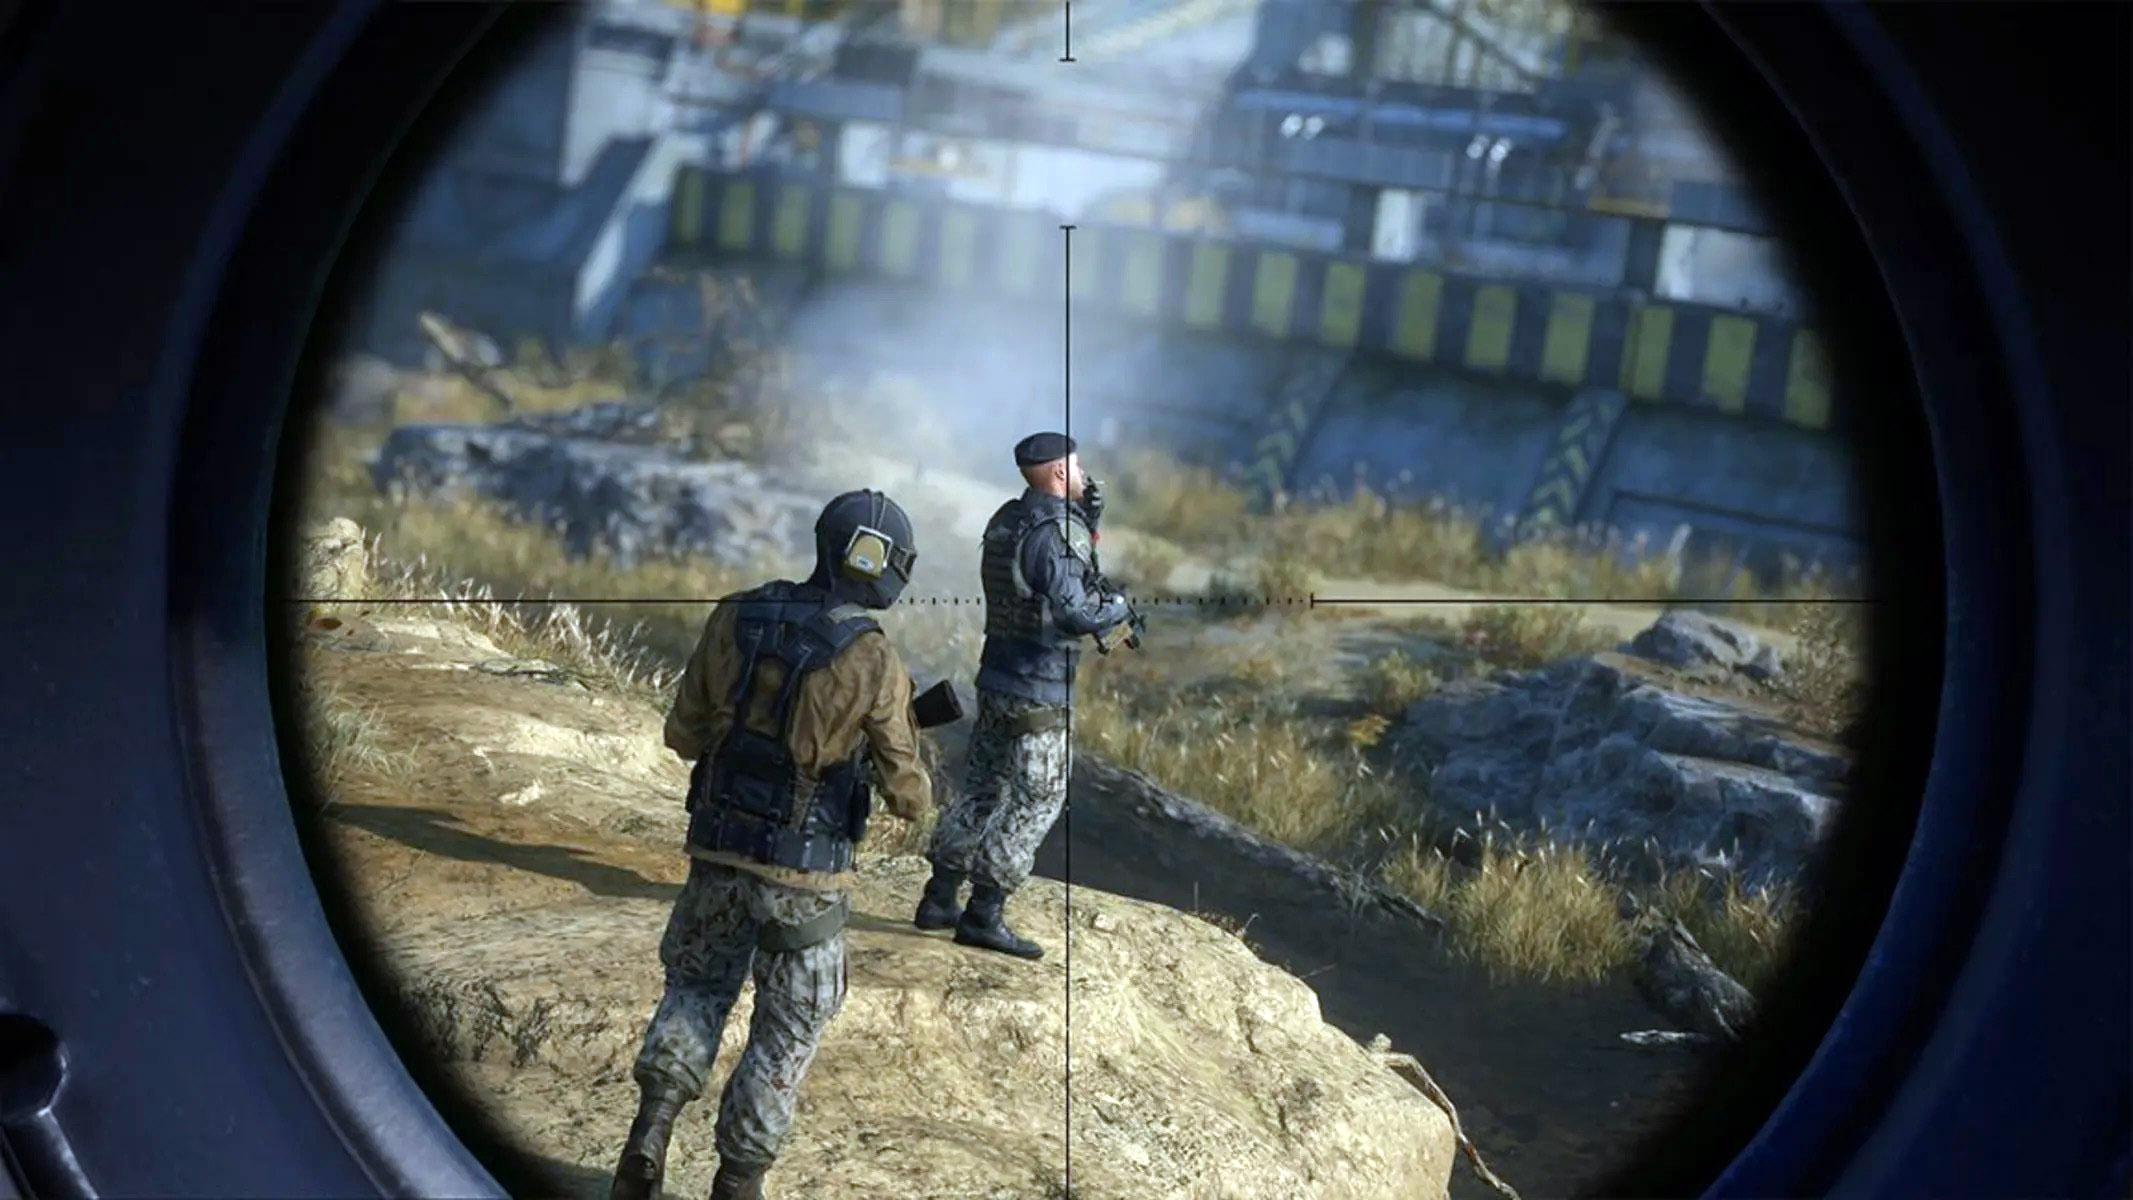 بازی The Sniper 2 برای پلی استیشن دو